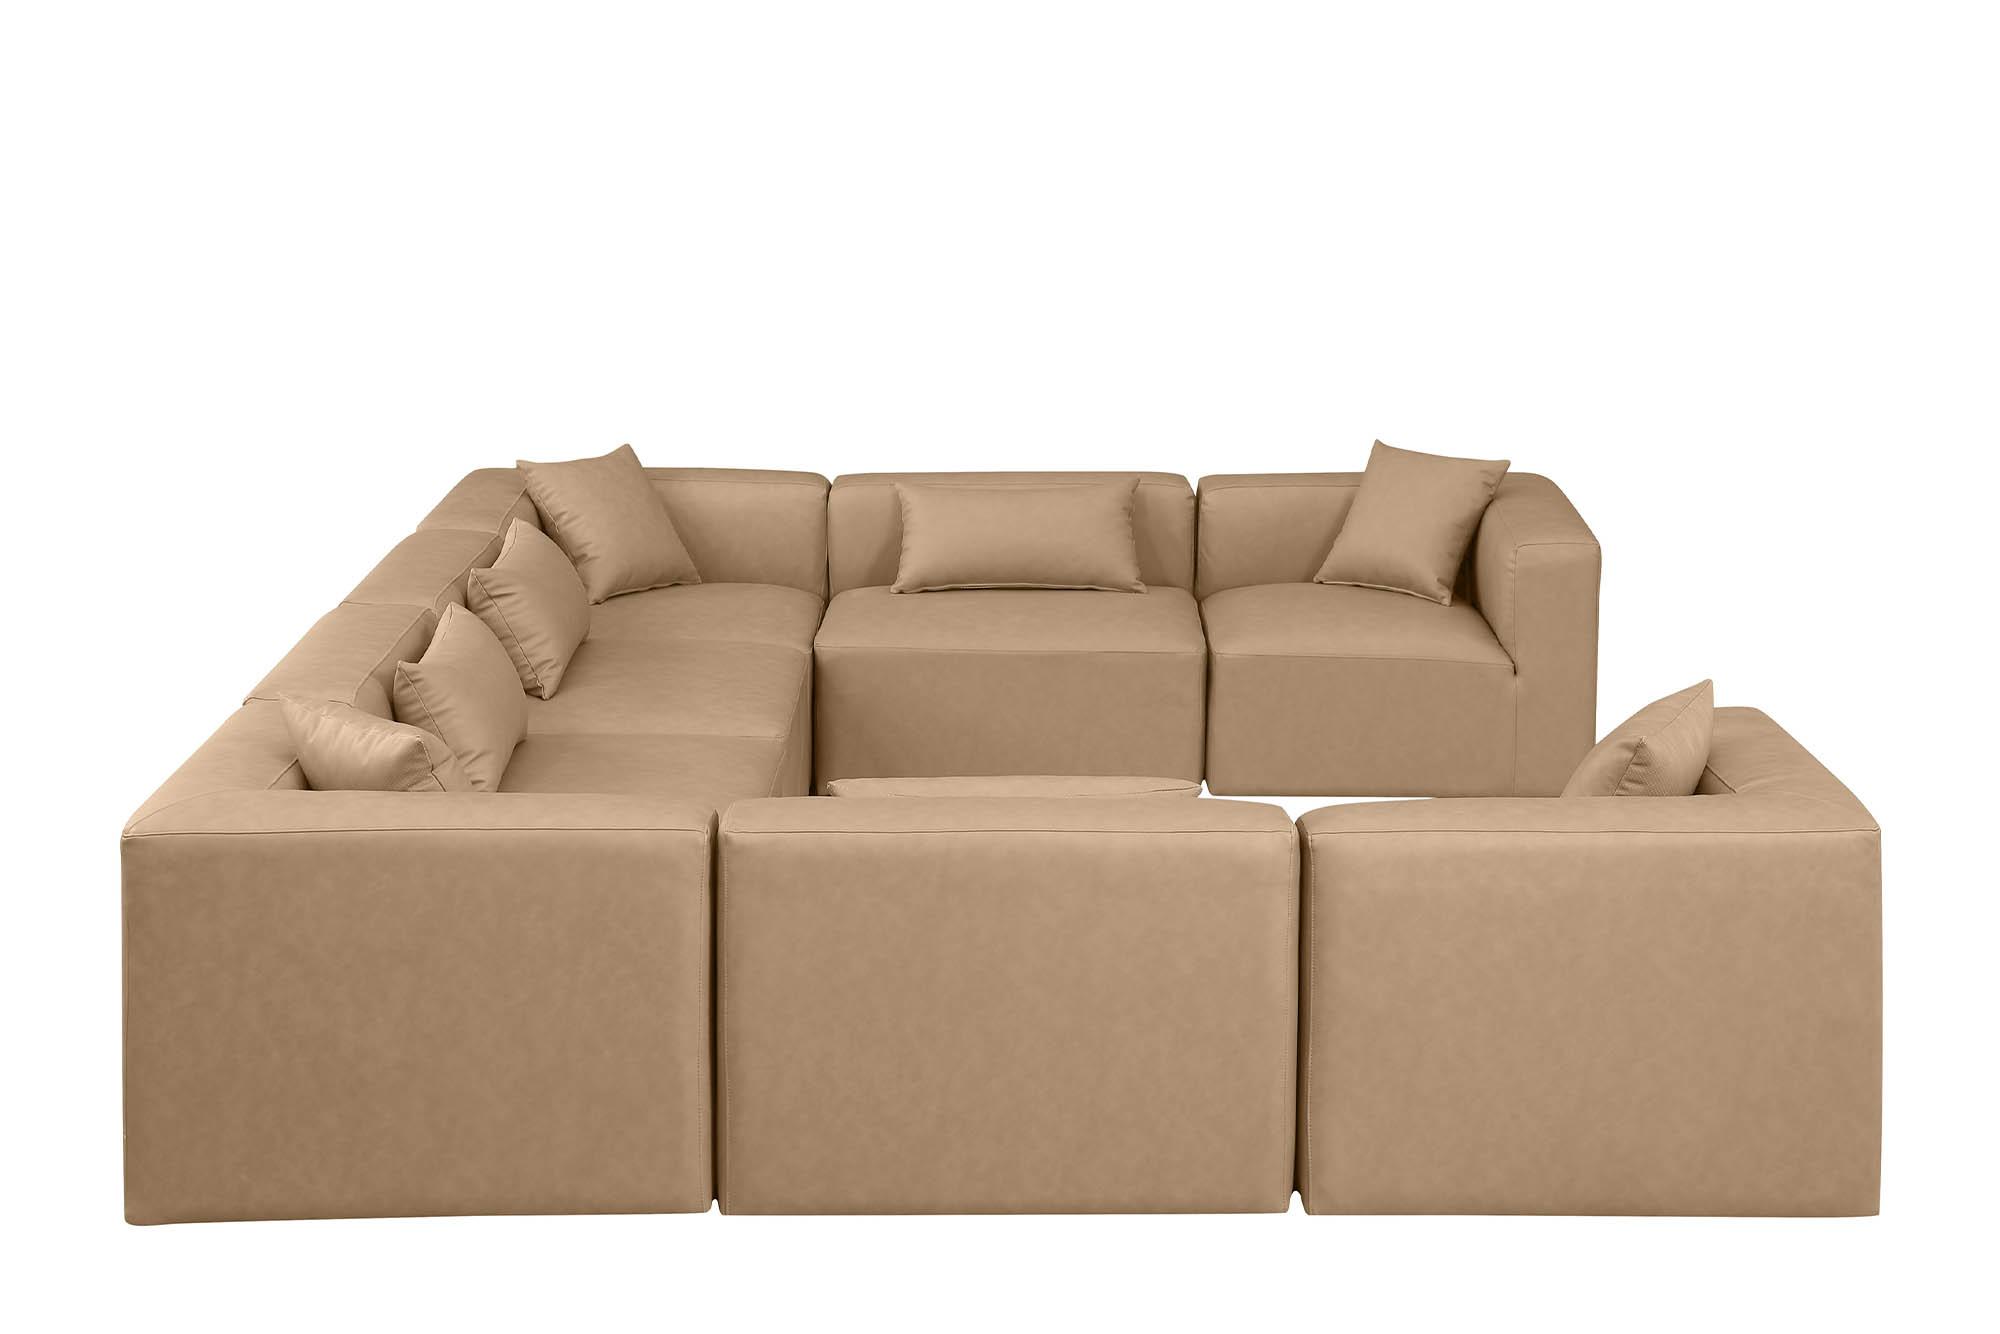 

    
668Tan-Sec8A Meridian Furniture Modular Sectional Sofa
